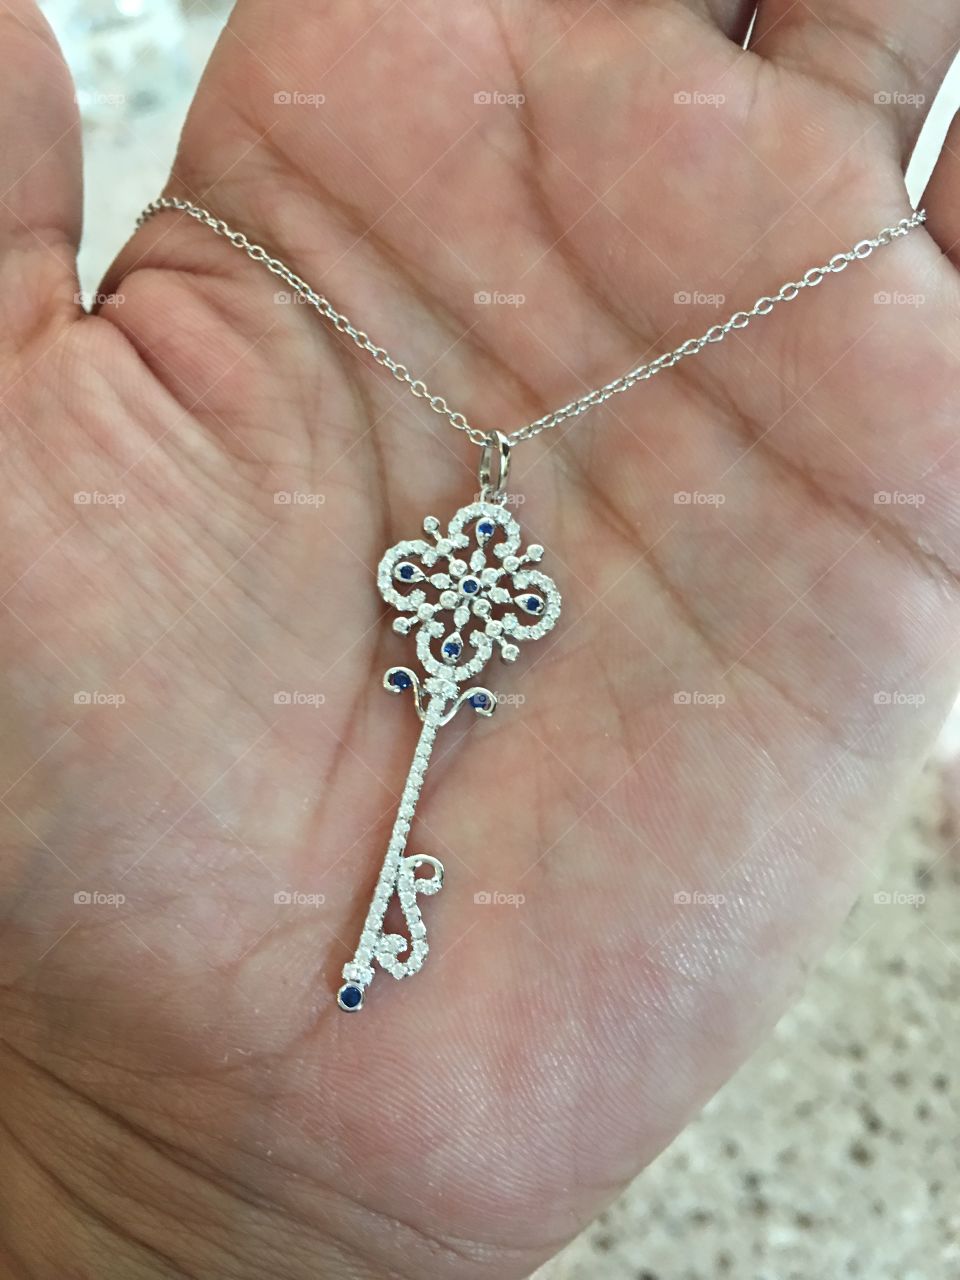 Jewelry Necklace Key